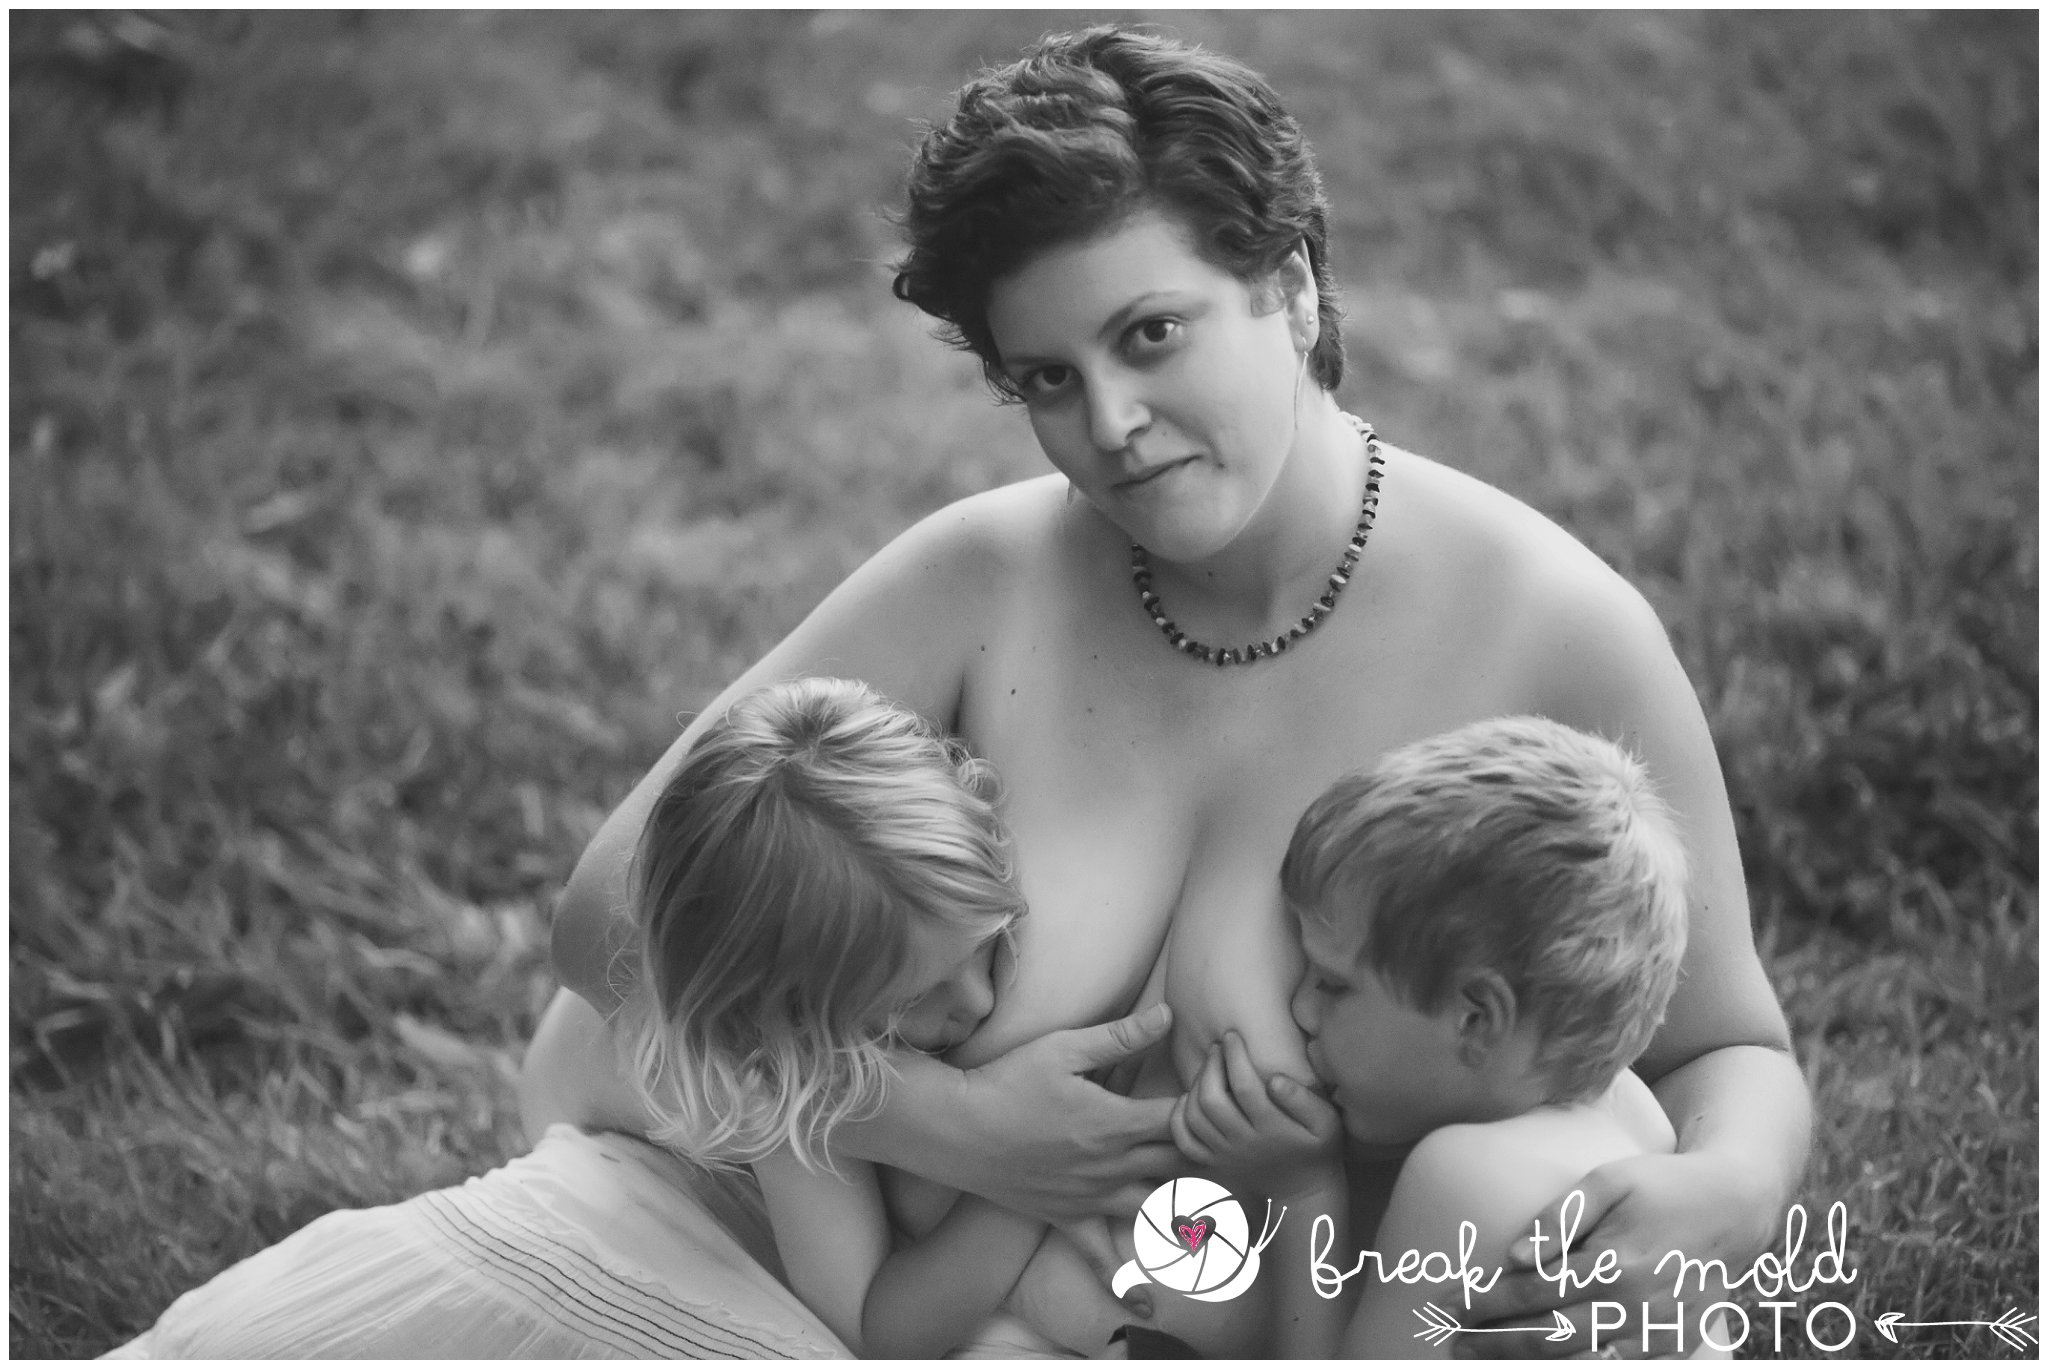 break-the-mold-photo-nursing-mothers-waterfall-women-celebrate-beauty_5469.jpg